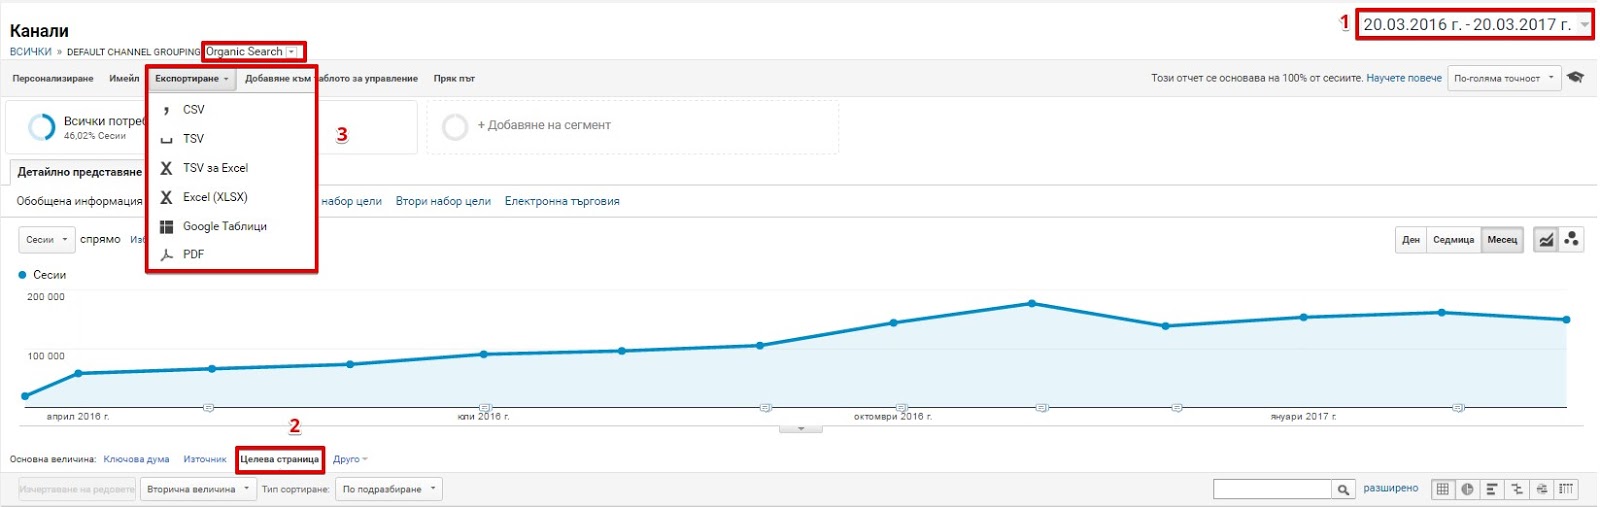 Изтеглете от Google Analytics страниците, носещи най-много трафик през предишните година-две